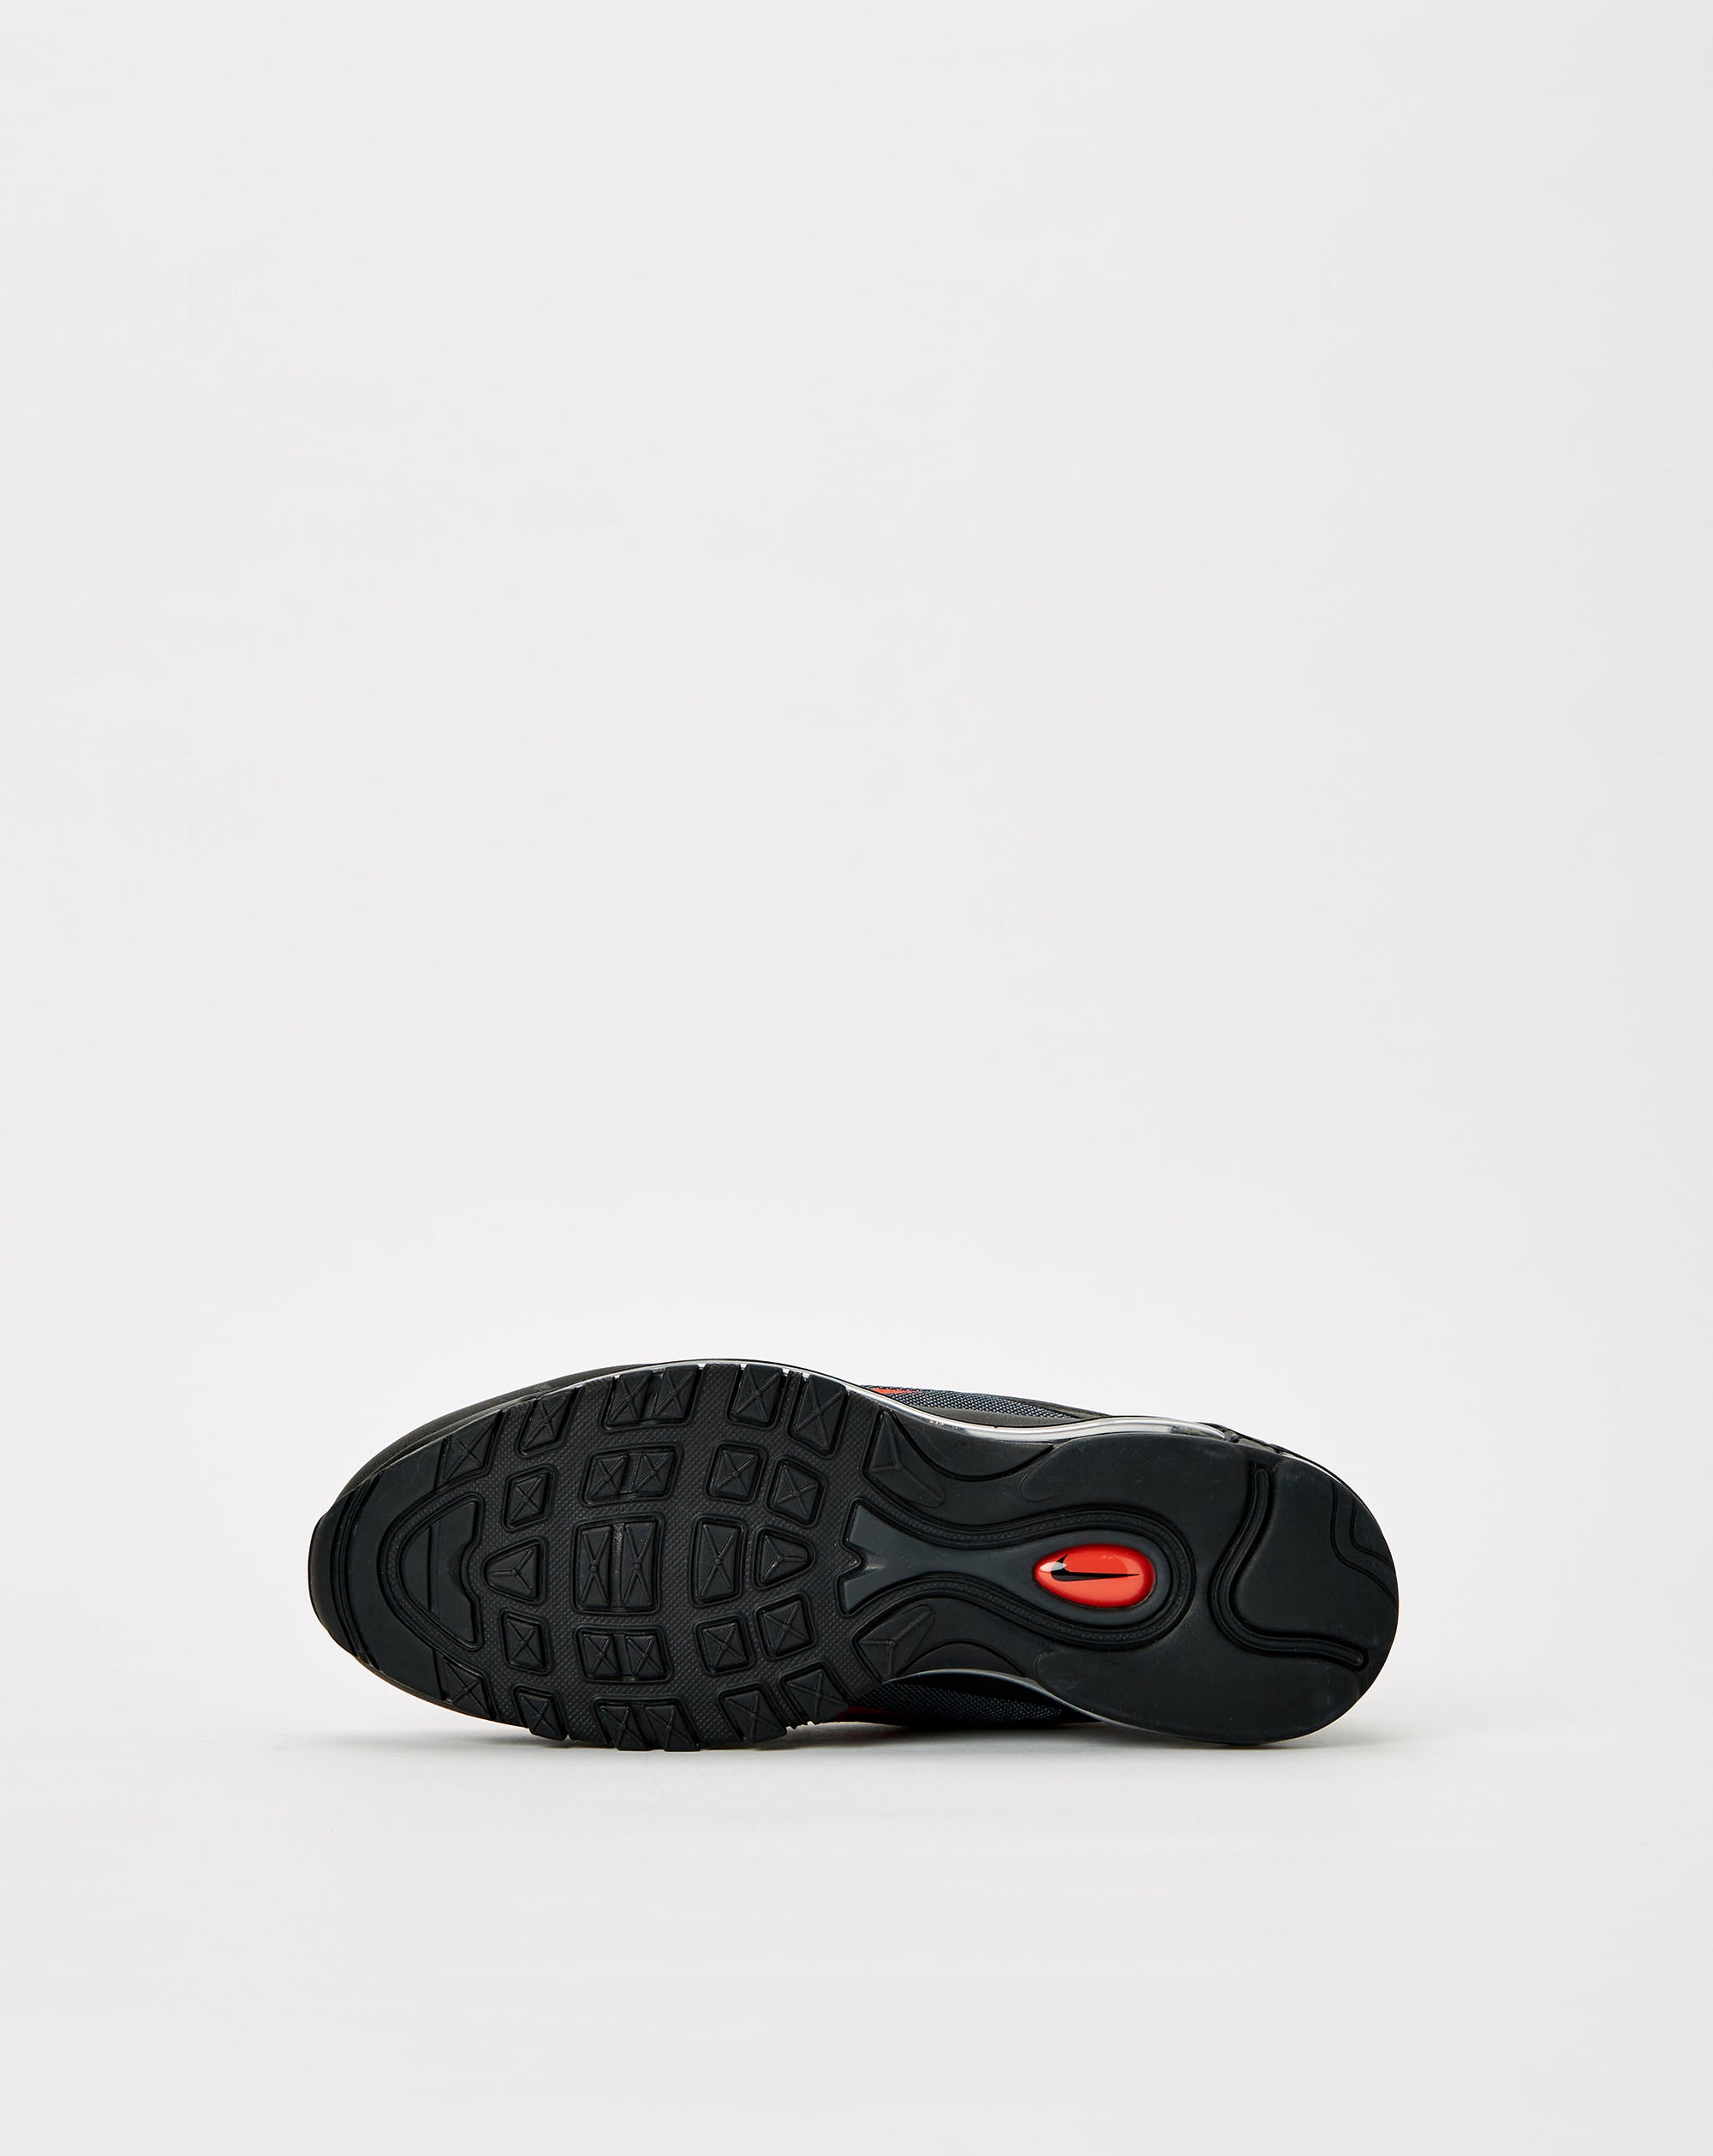 Nike Air Max 97 - Rule of Next Footwear